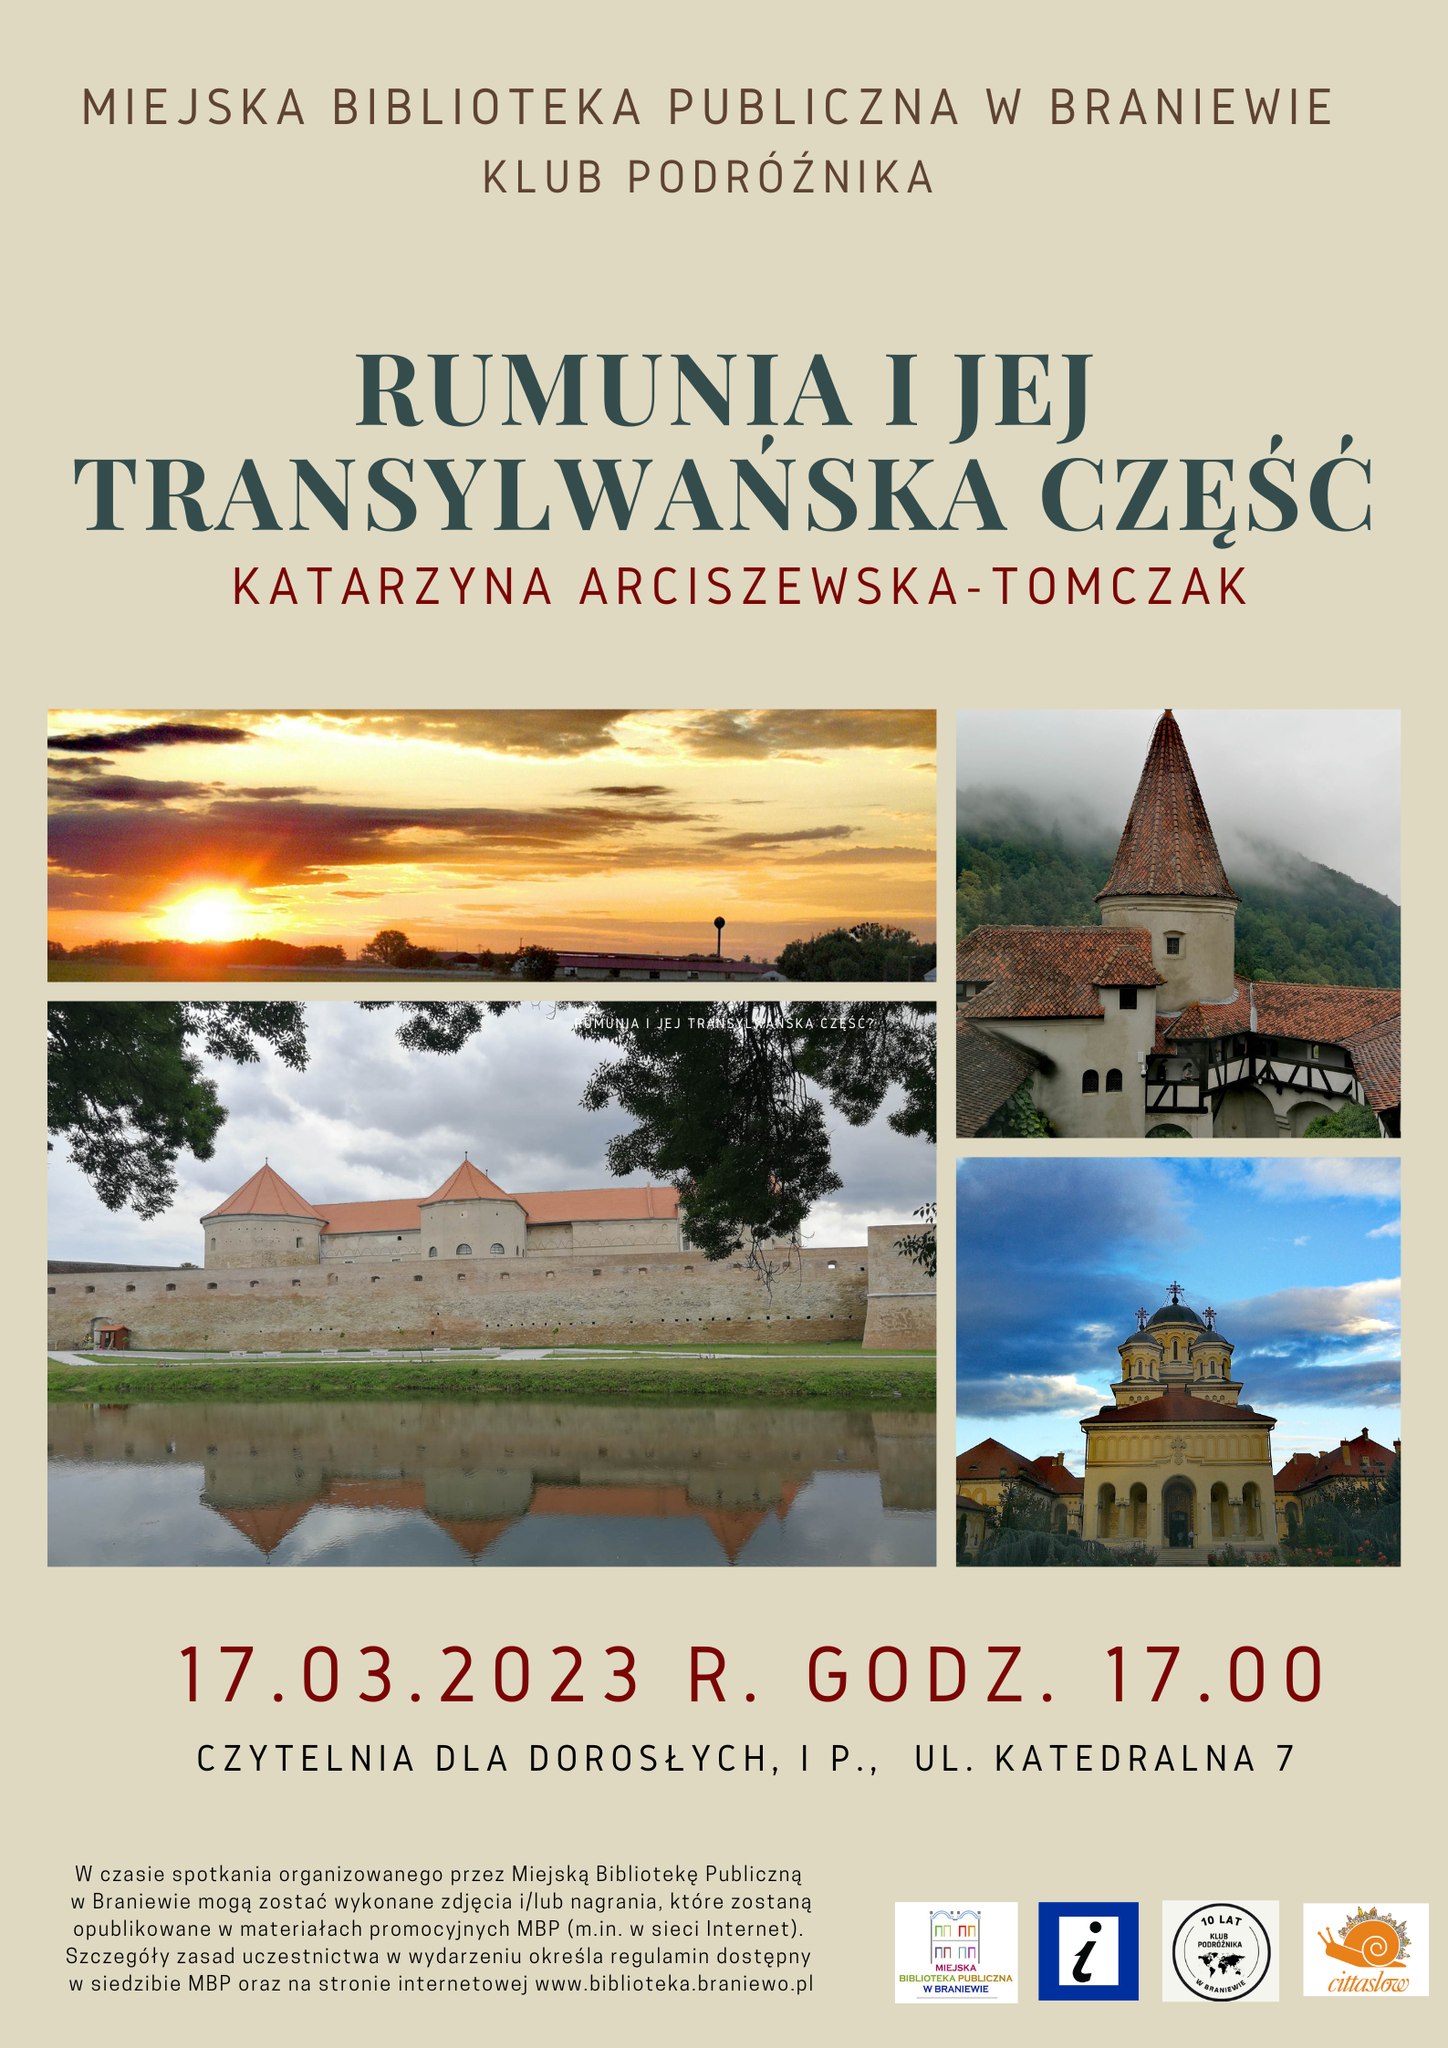 plakat klub podróżnika zdjecia z wyprawy w rumunii wykonane przez panią katarzyne arciszewską